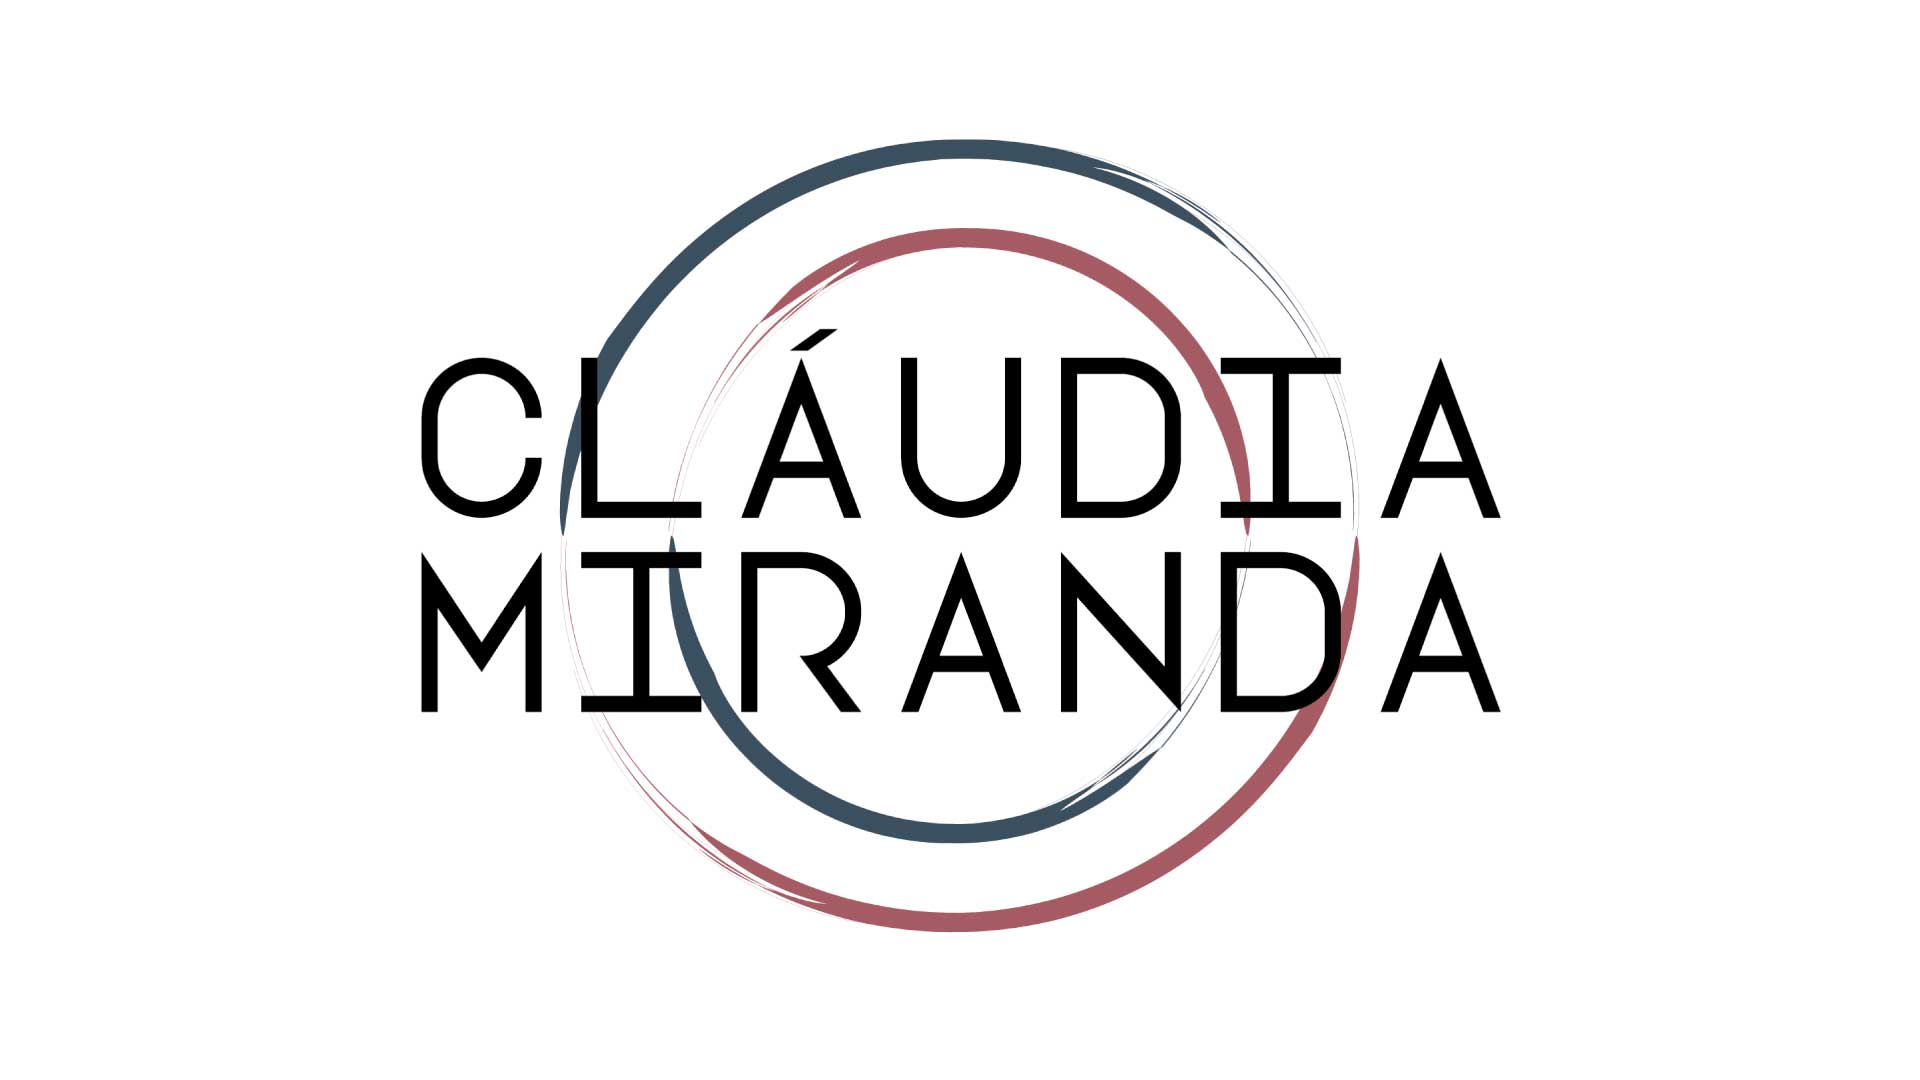 Cláudia Miranda